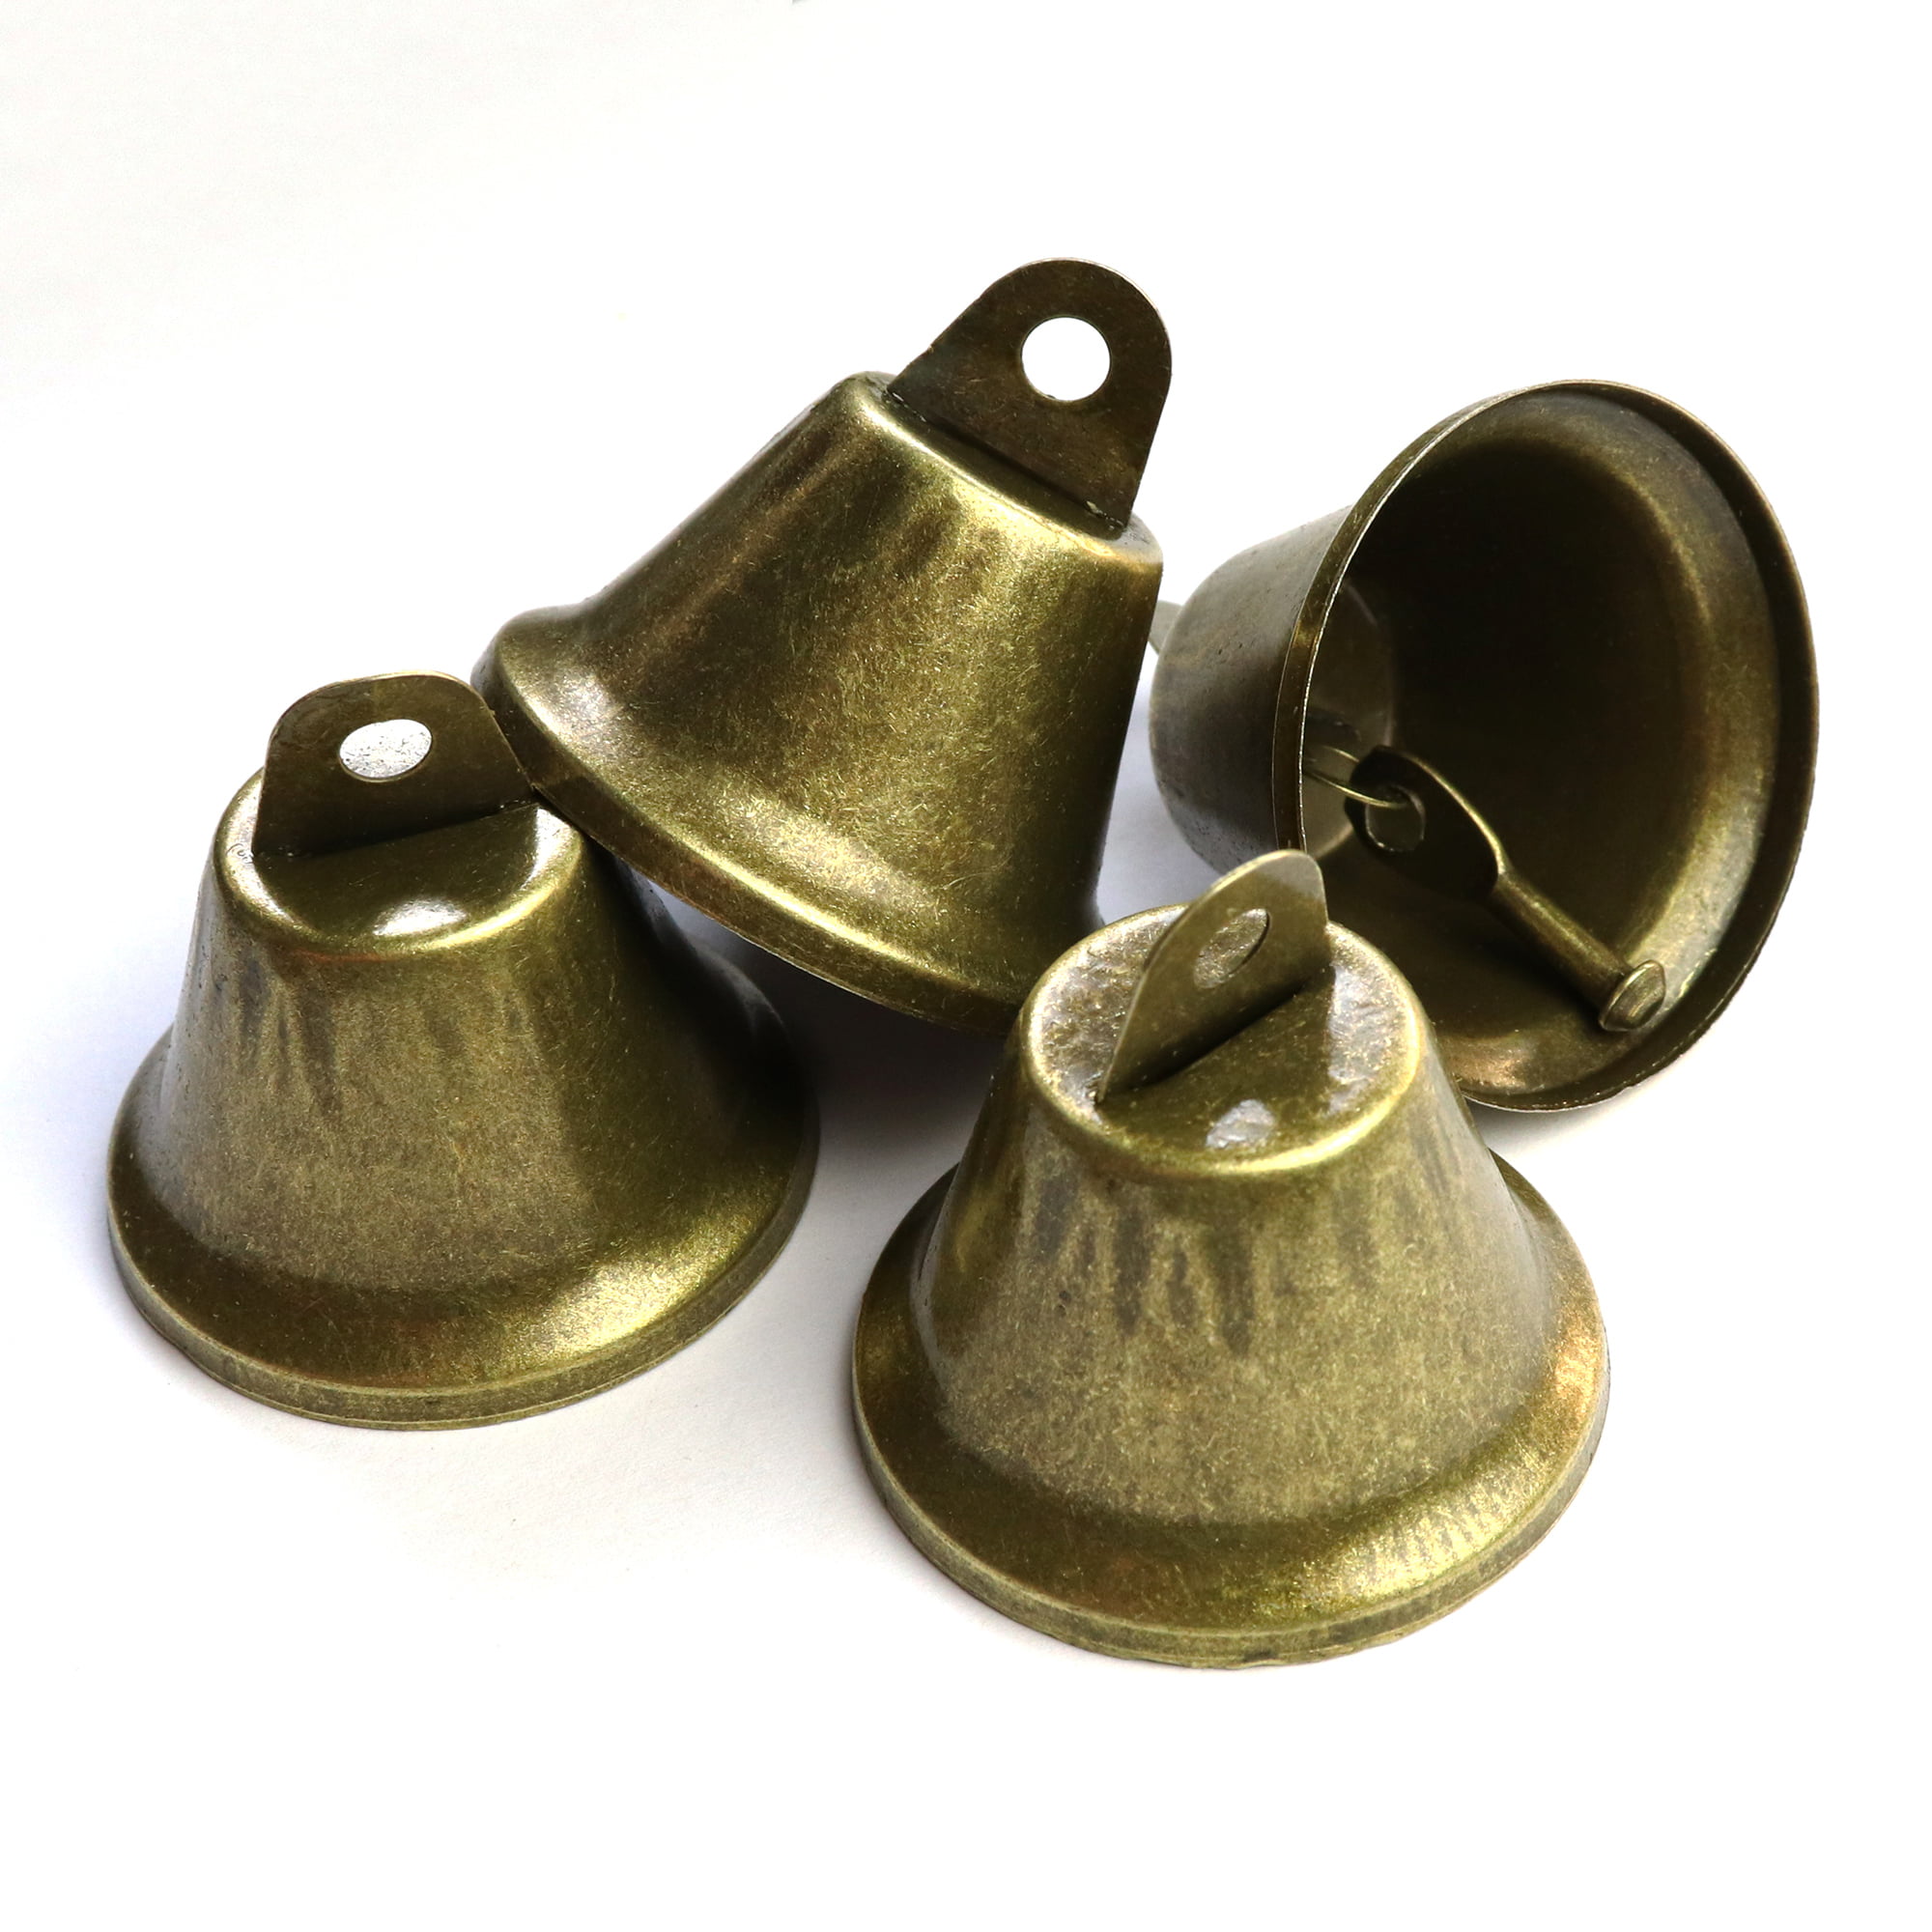 SUPVOX 15 unids Vintage jingle bells de bronce para el entrenamiento del potty dog housebreaking haciendo campanas de viento artesanías y favor de decoración 